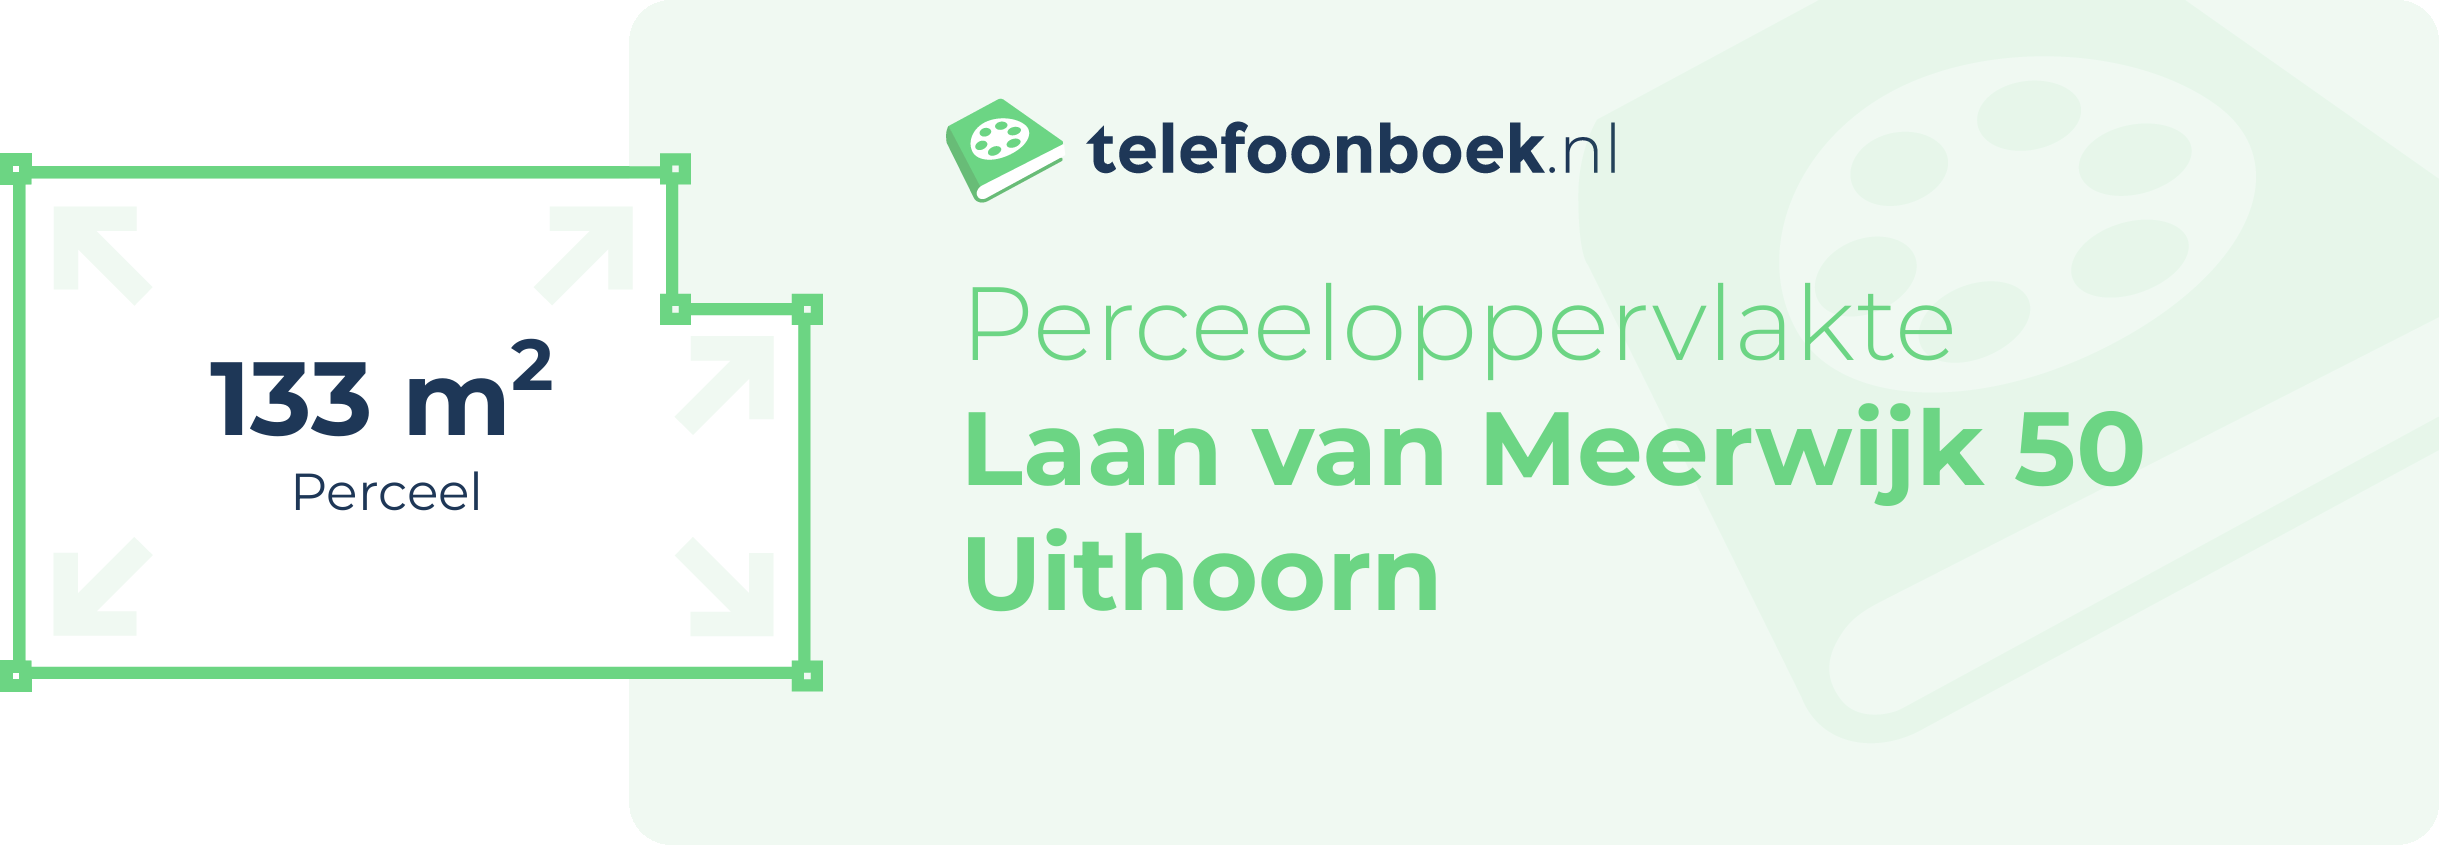 Perceeloppervlakte Laan Van Meerwijk 50 Uithoorn